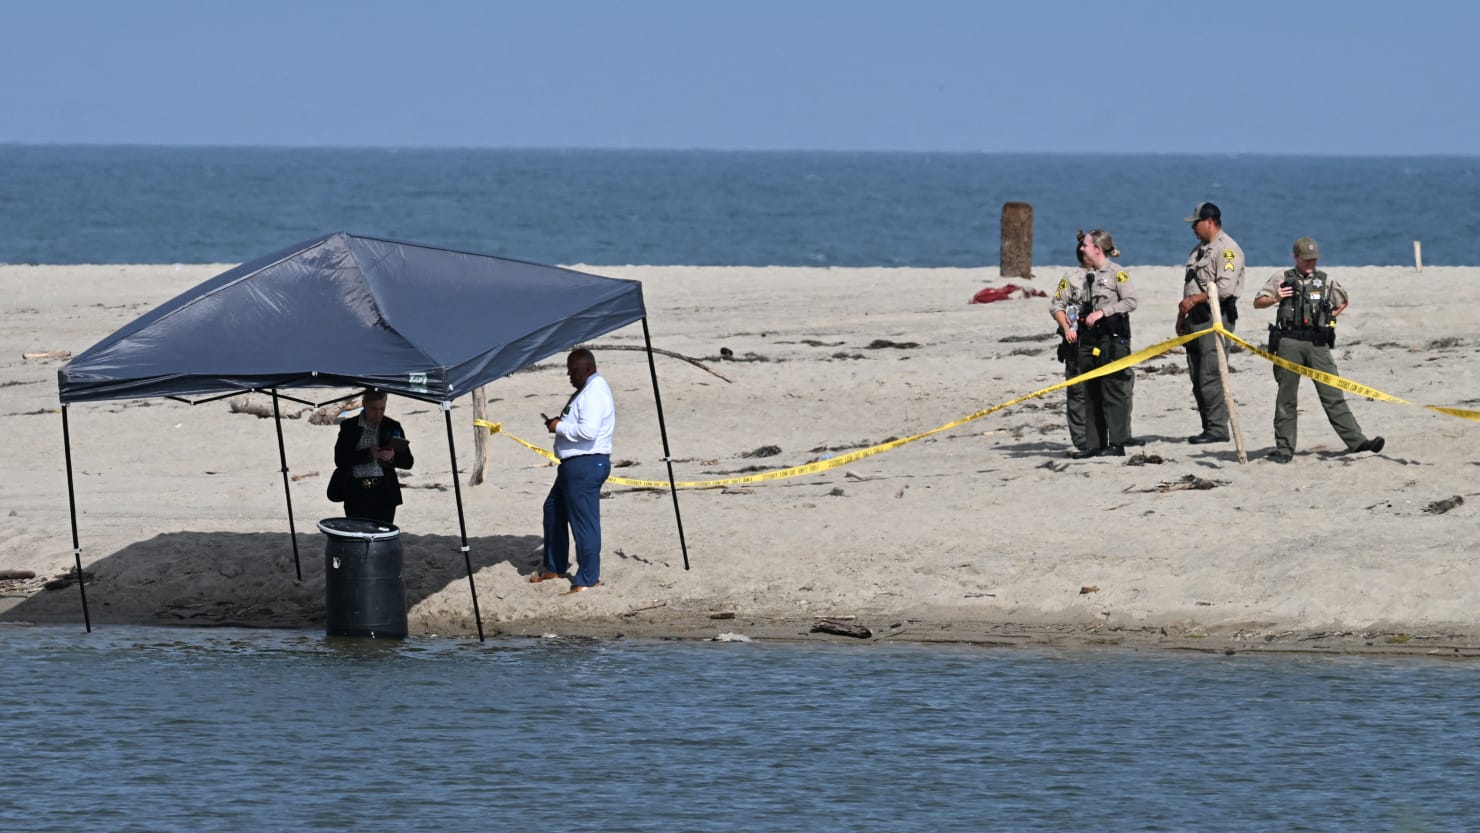 Naked Body Found Stuffed Inside Barrel by Malibu Lifeguard Identified image